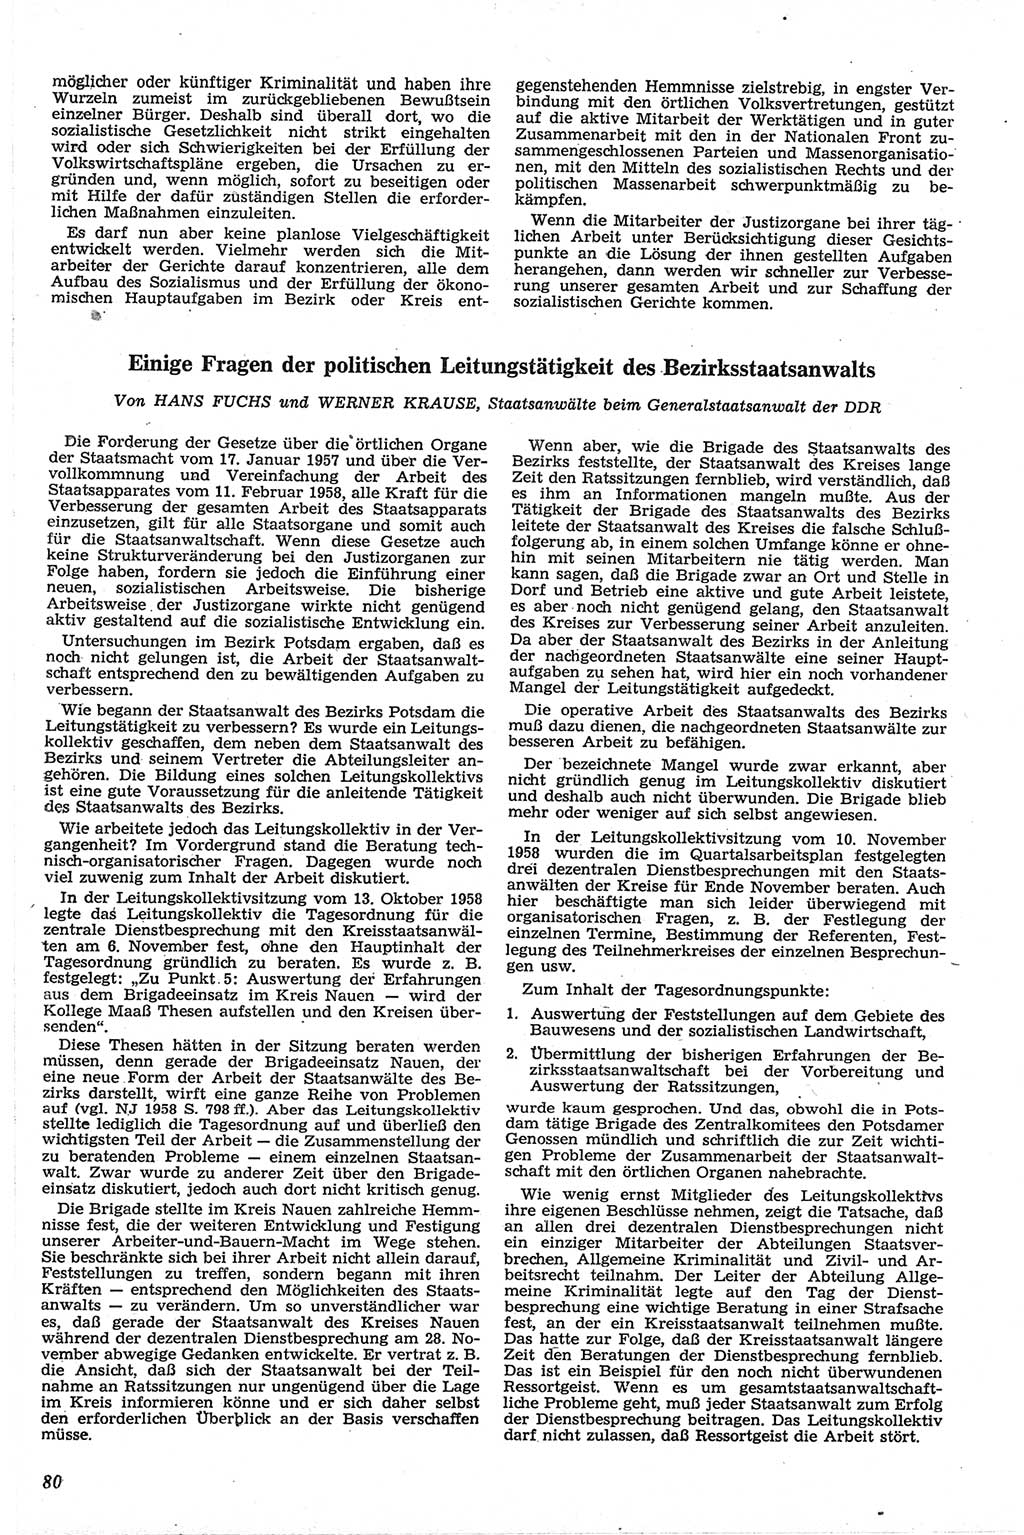 Neue Justiz (NJ), Zeitschrift für Recht und Rechtswissenschaft [Deutsche Demokratische Republik (DDR)], 13. Jahrgang 1959, Seite 80 (NJ DDR 1959, S. 80)